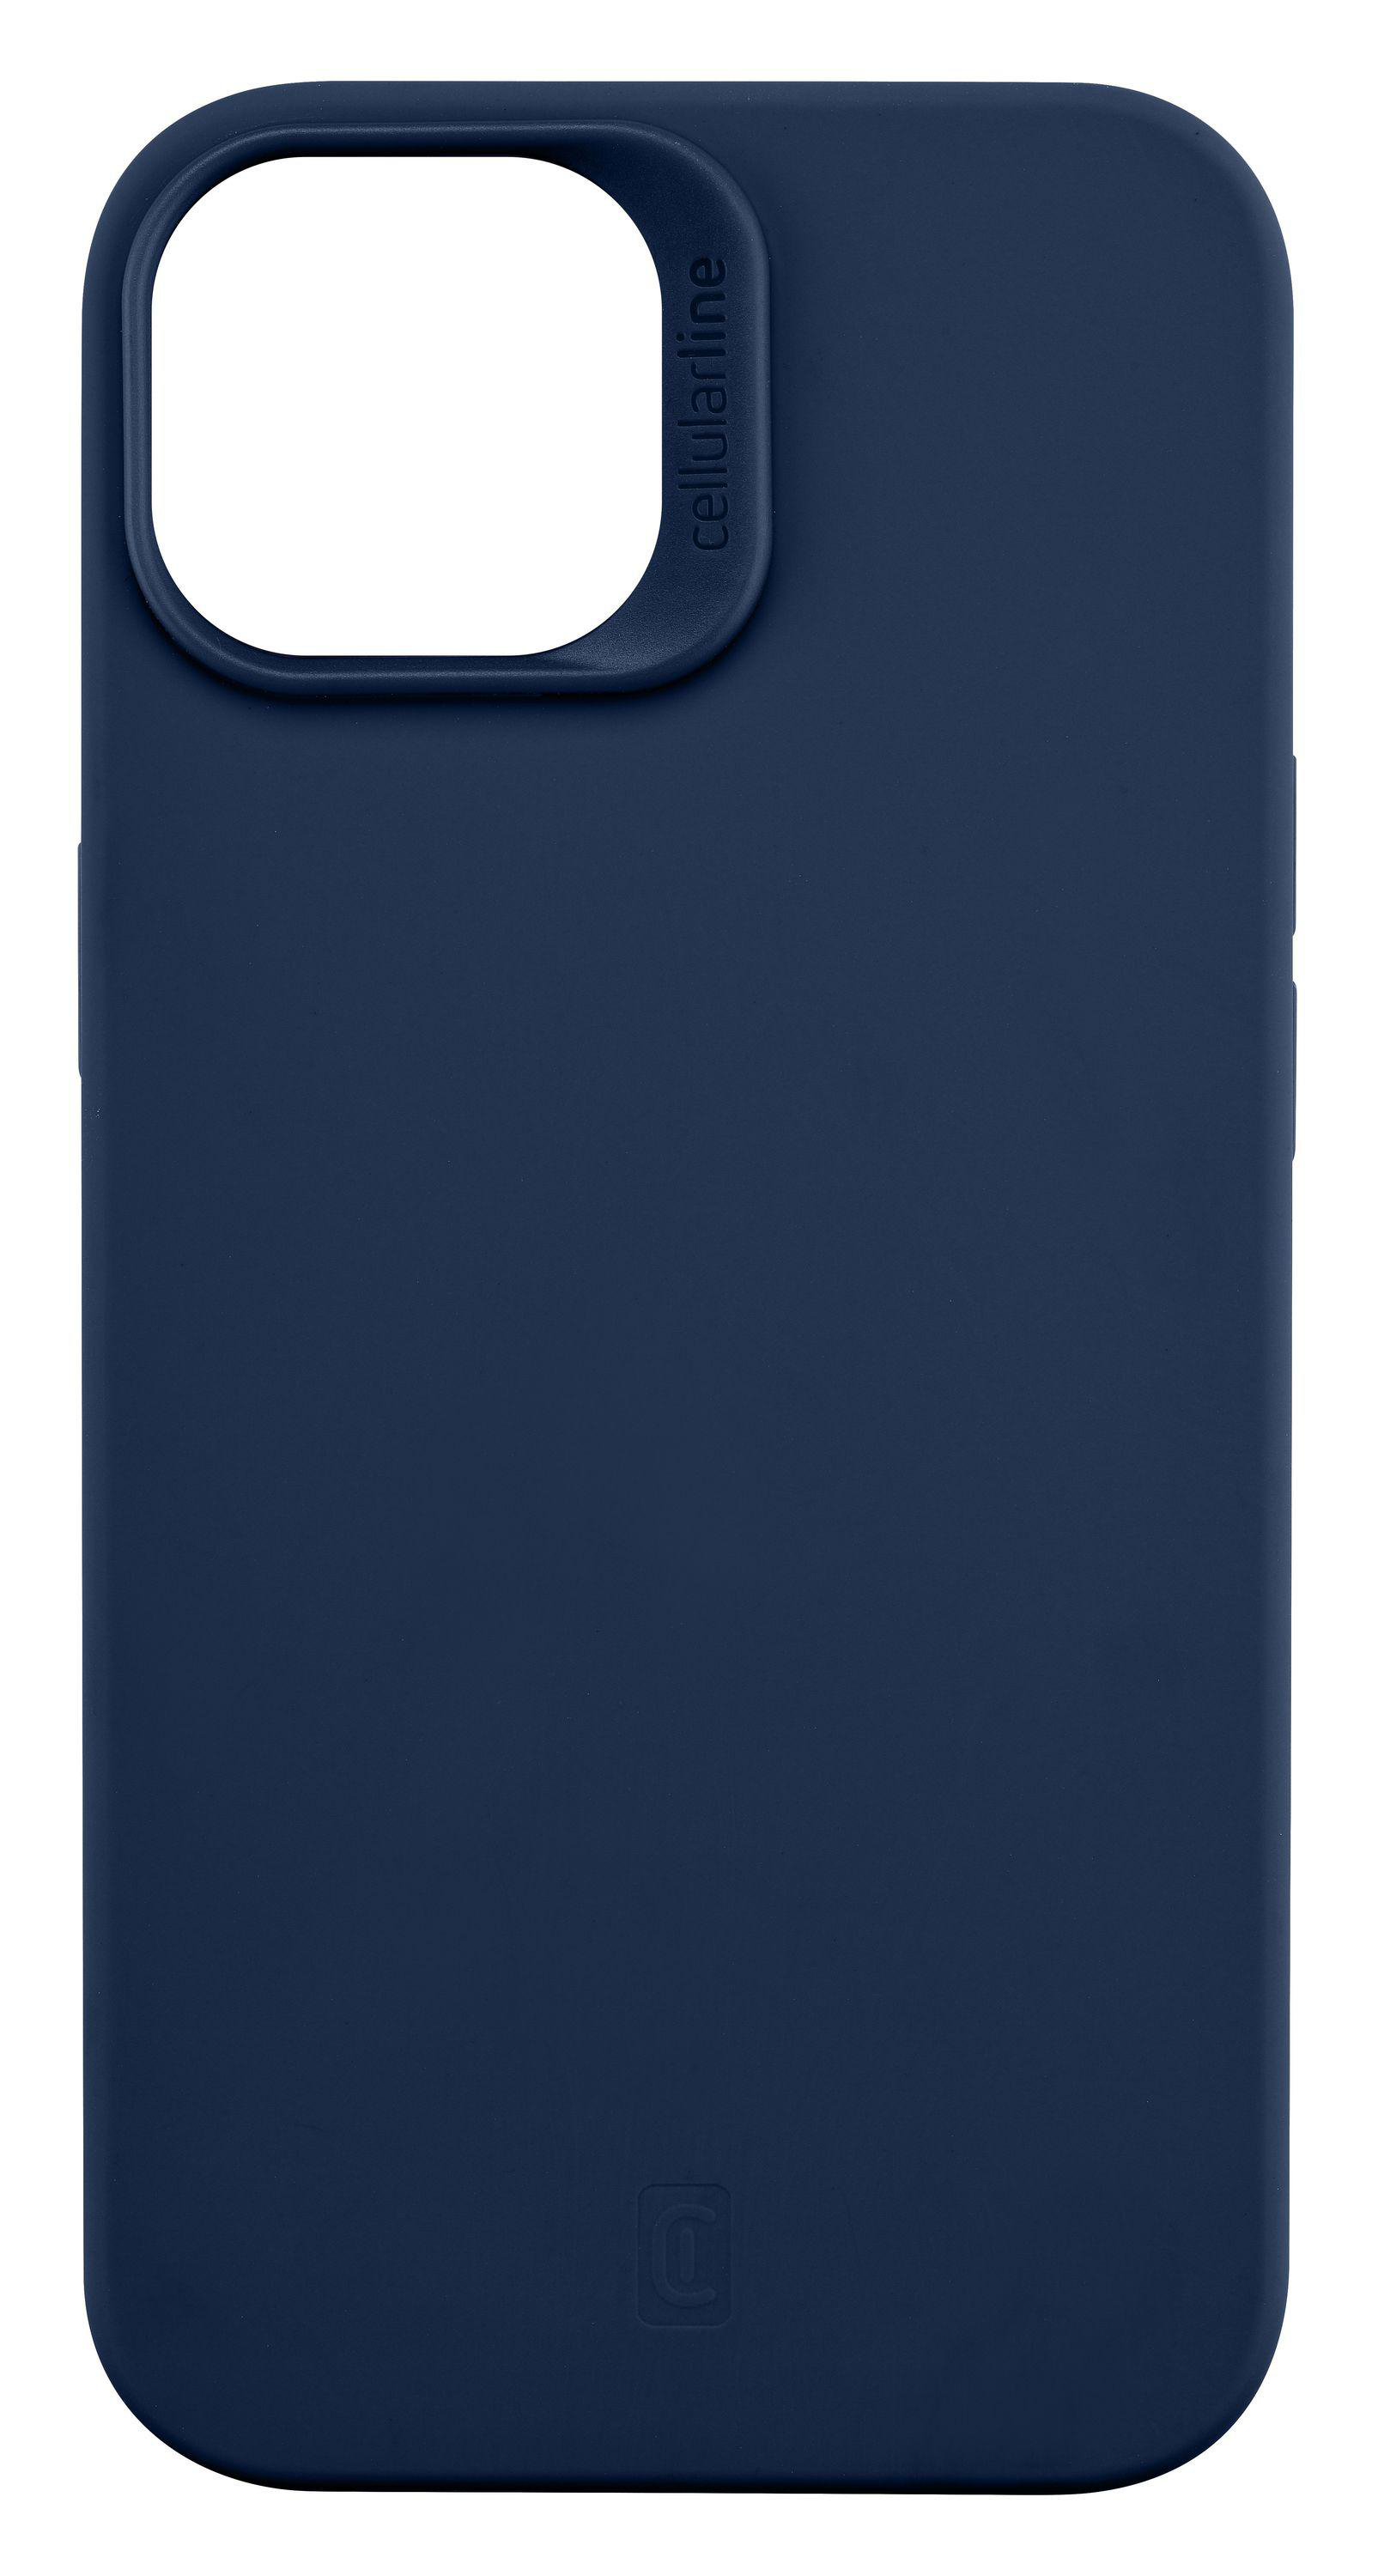 14, LINE Sensation, Blue CELLULAR iPhone Backcover, Apple,